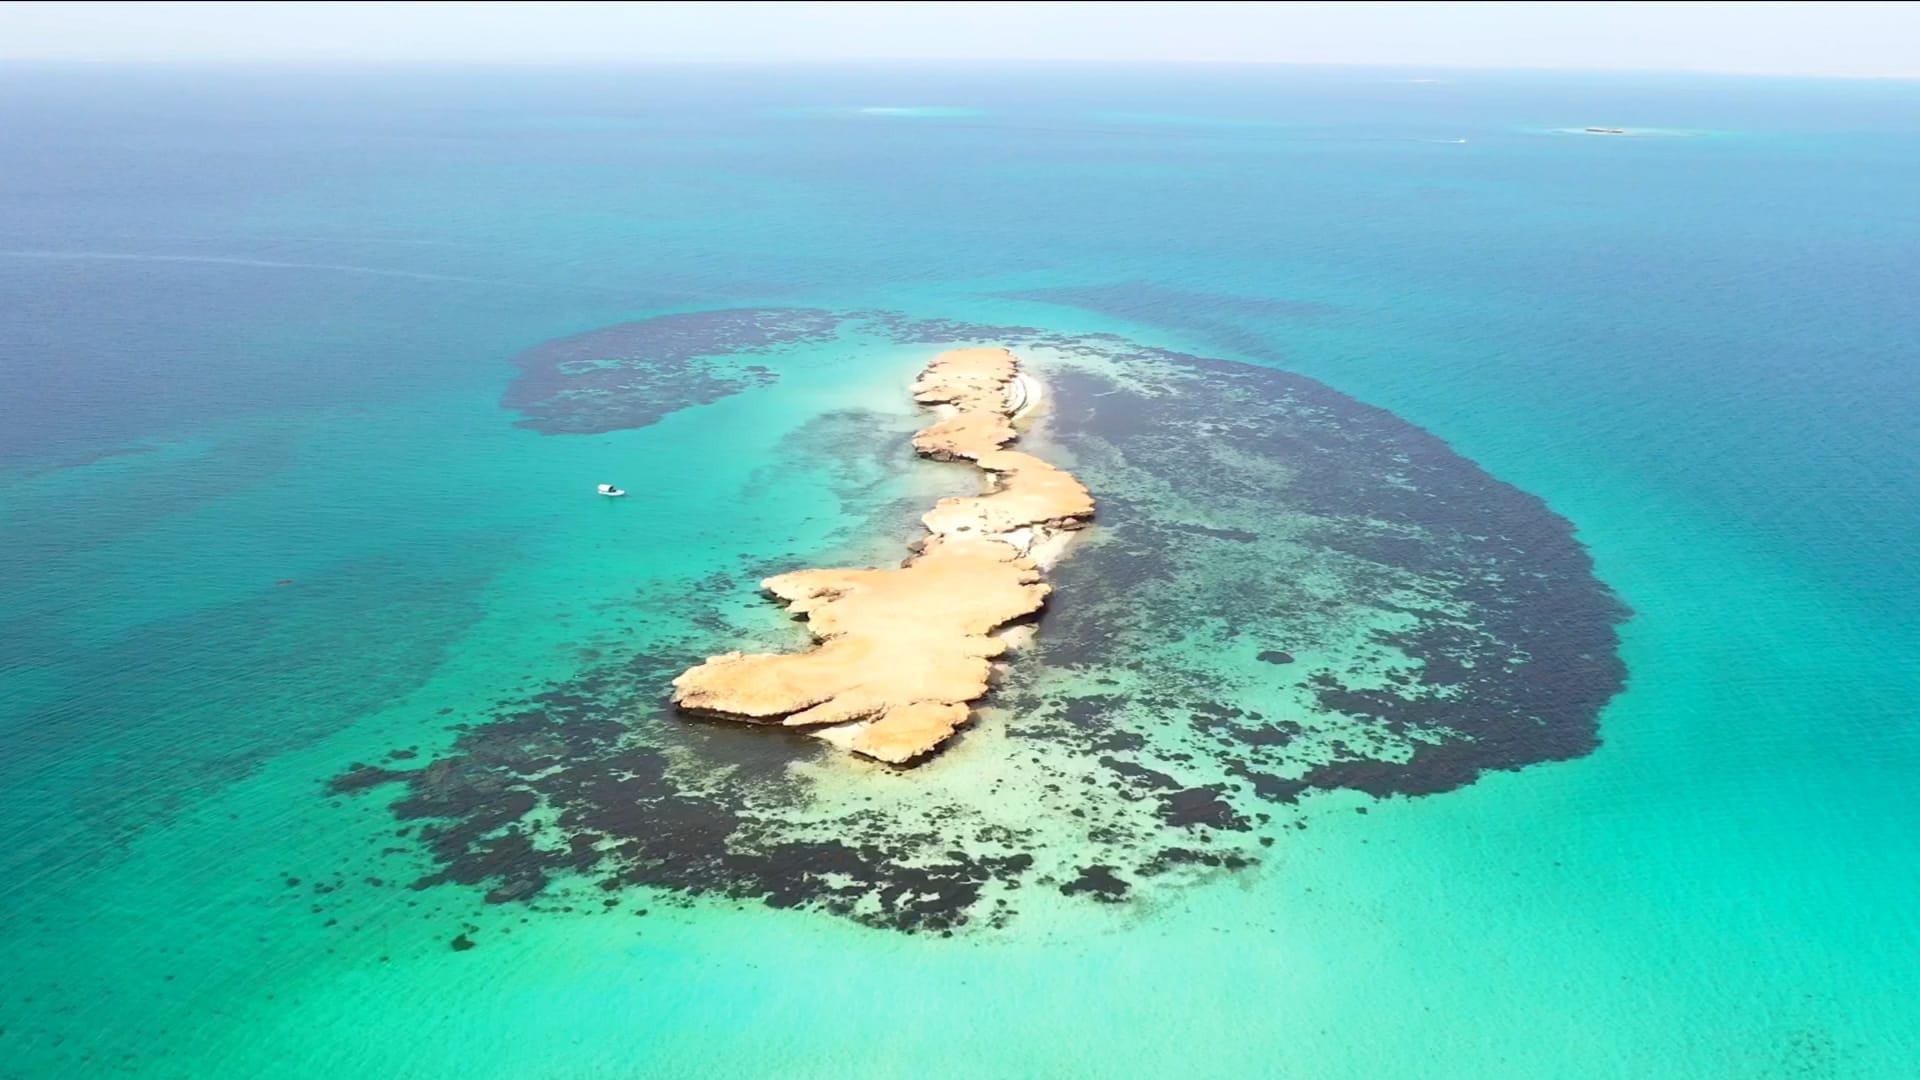 جولة بصرية تثير الاهتمام وجزر فرسان تلقب بـ"مالديف السعودية" لهذا السب